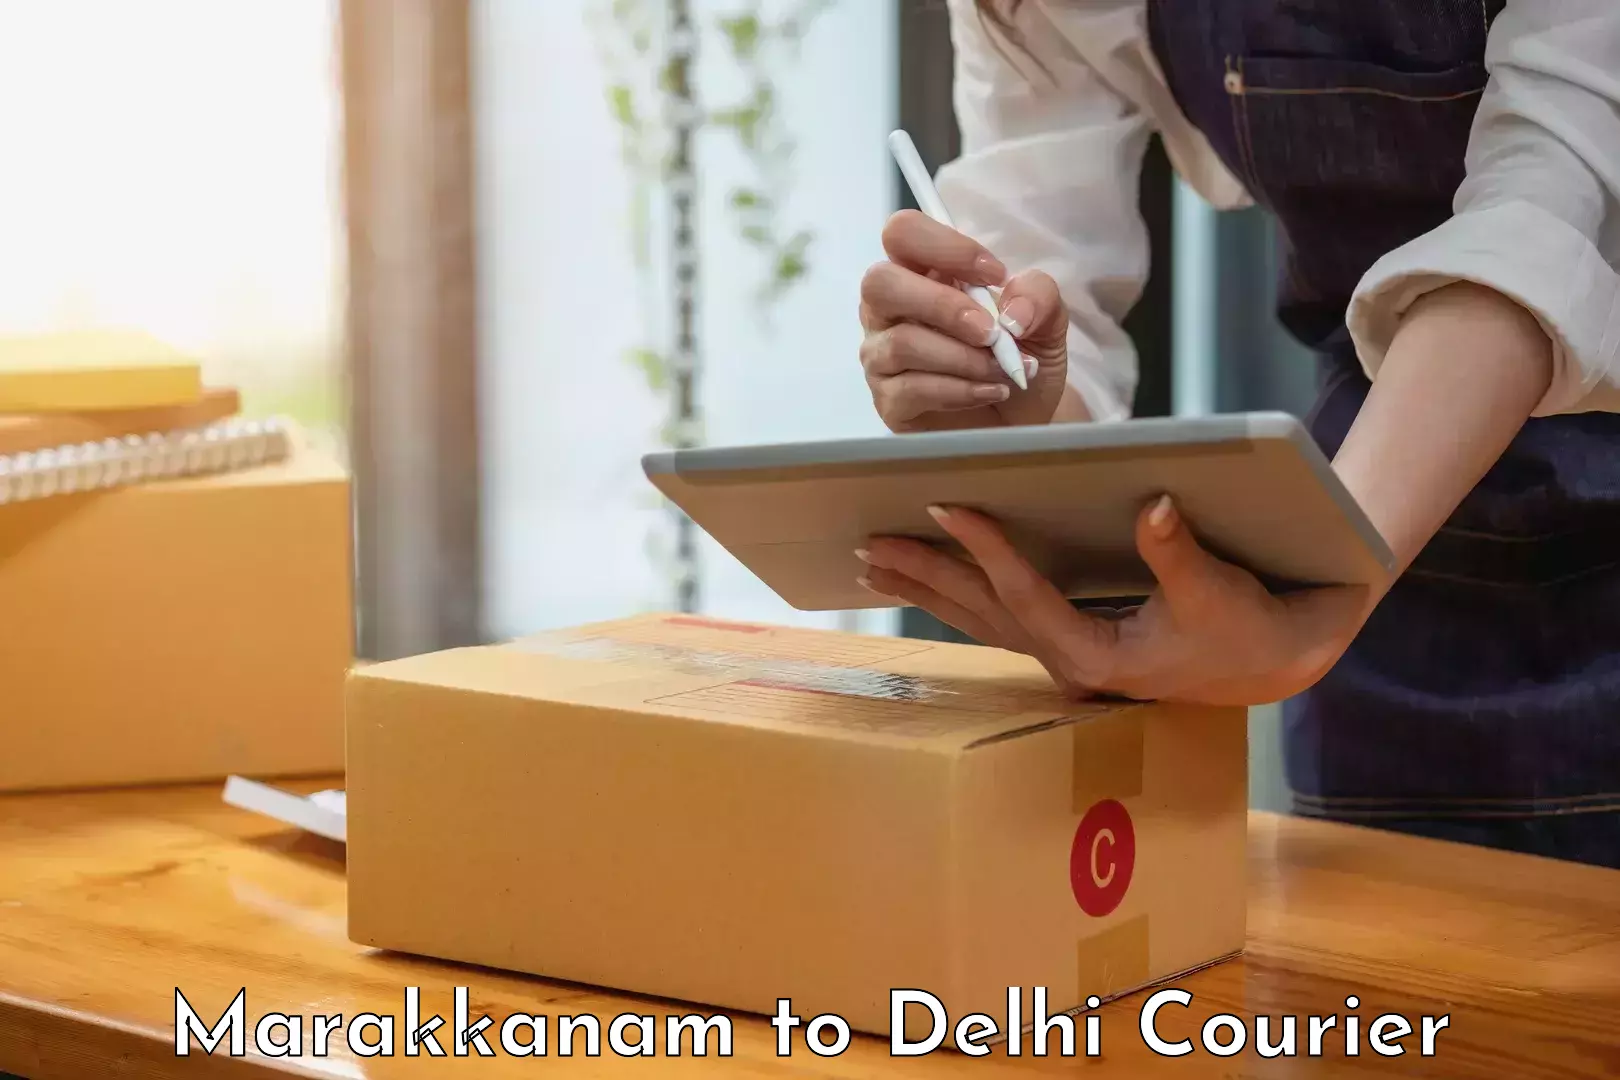 Efficient logistics management Marakkanam to Delhi